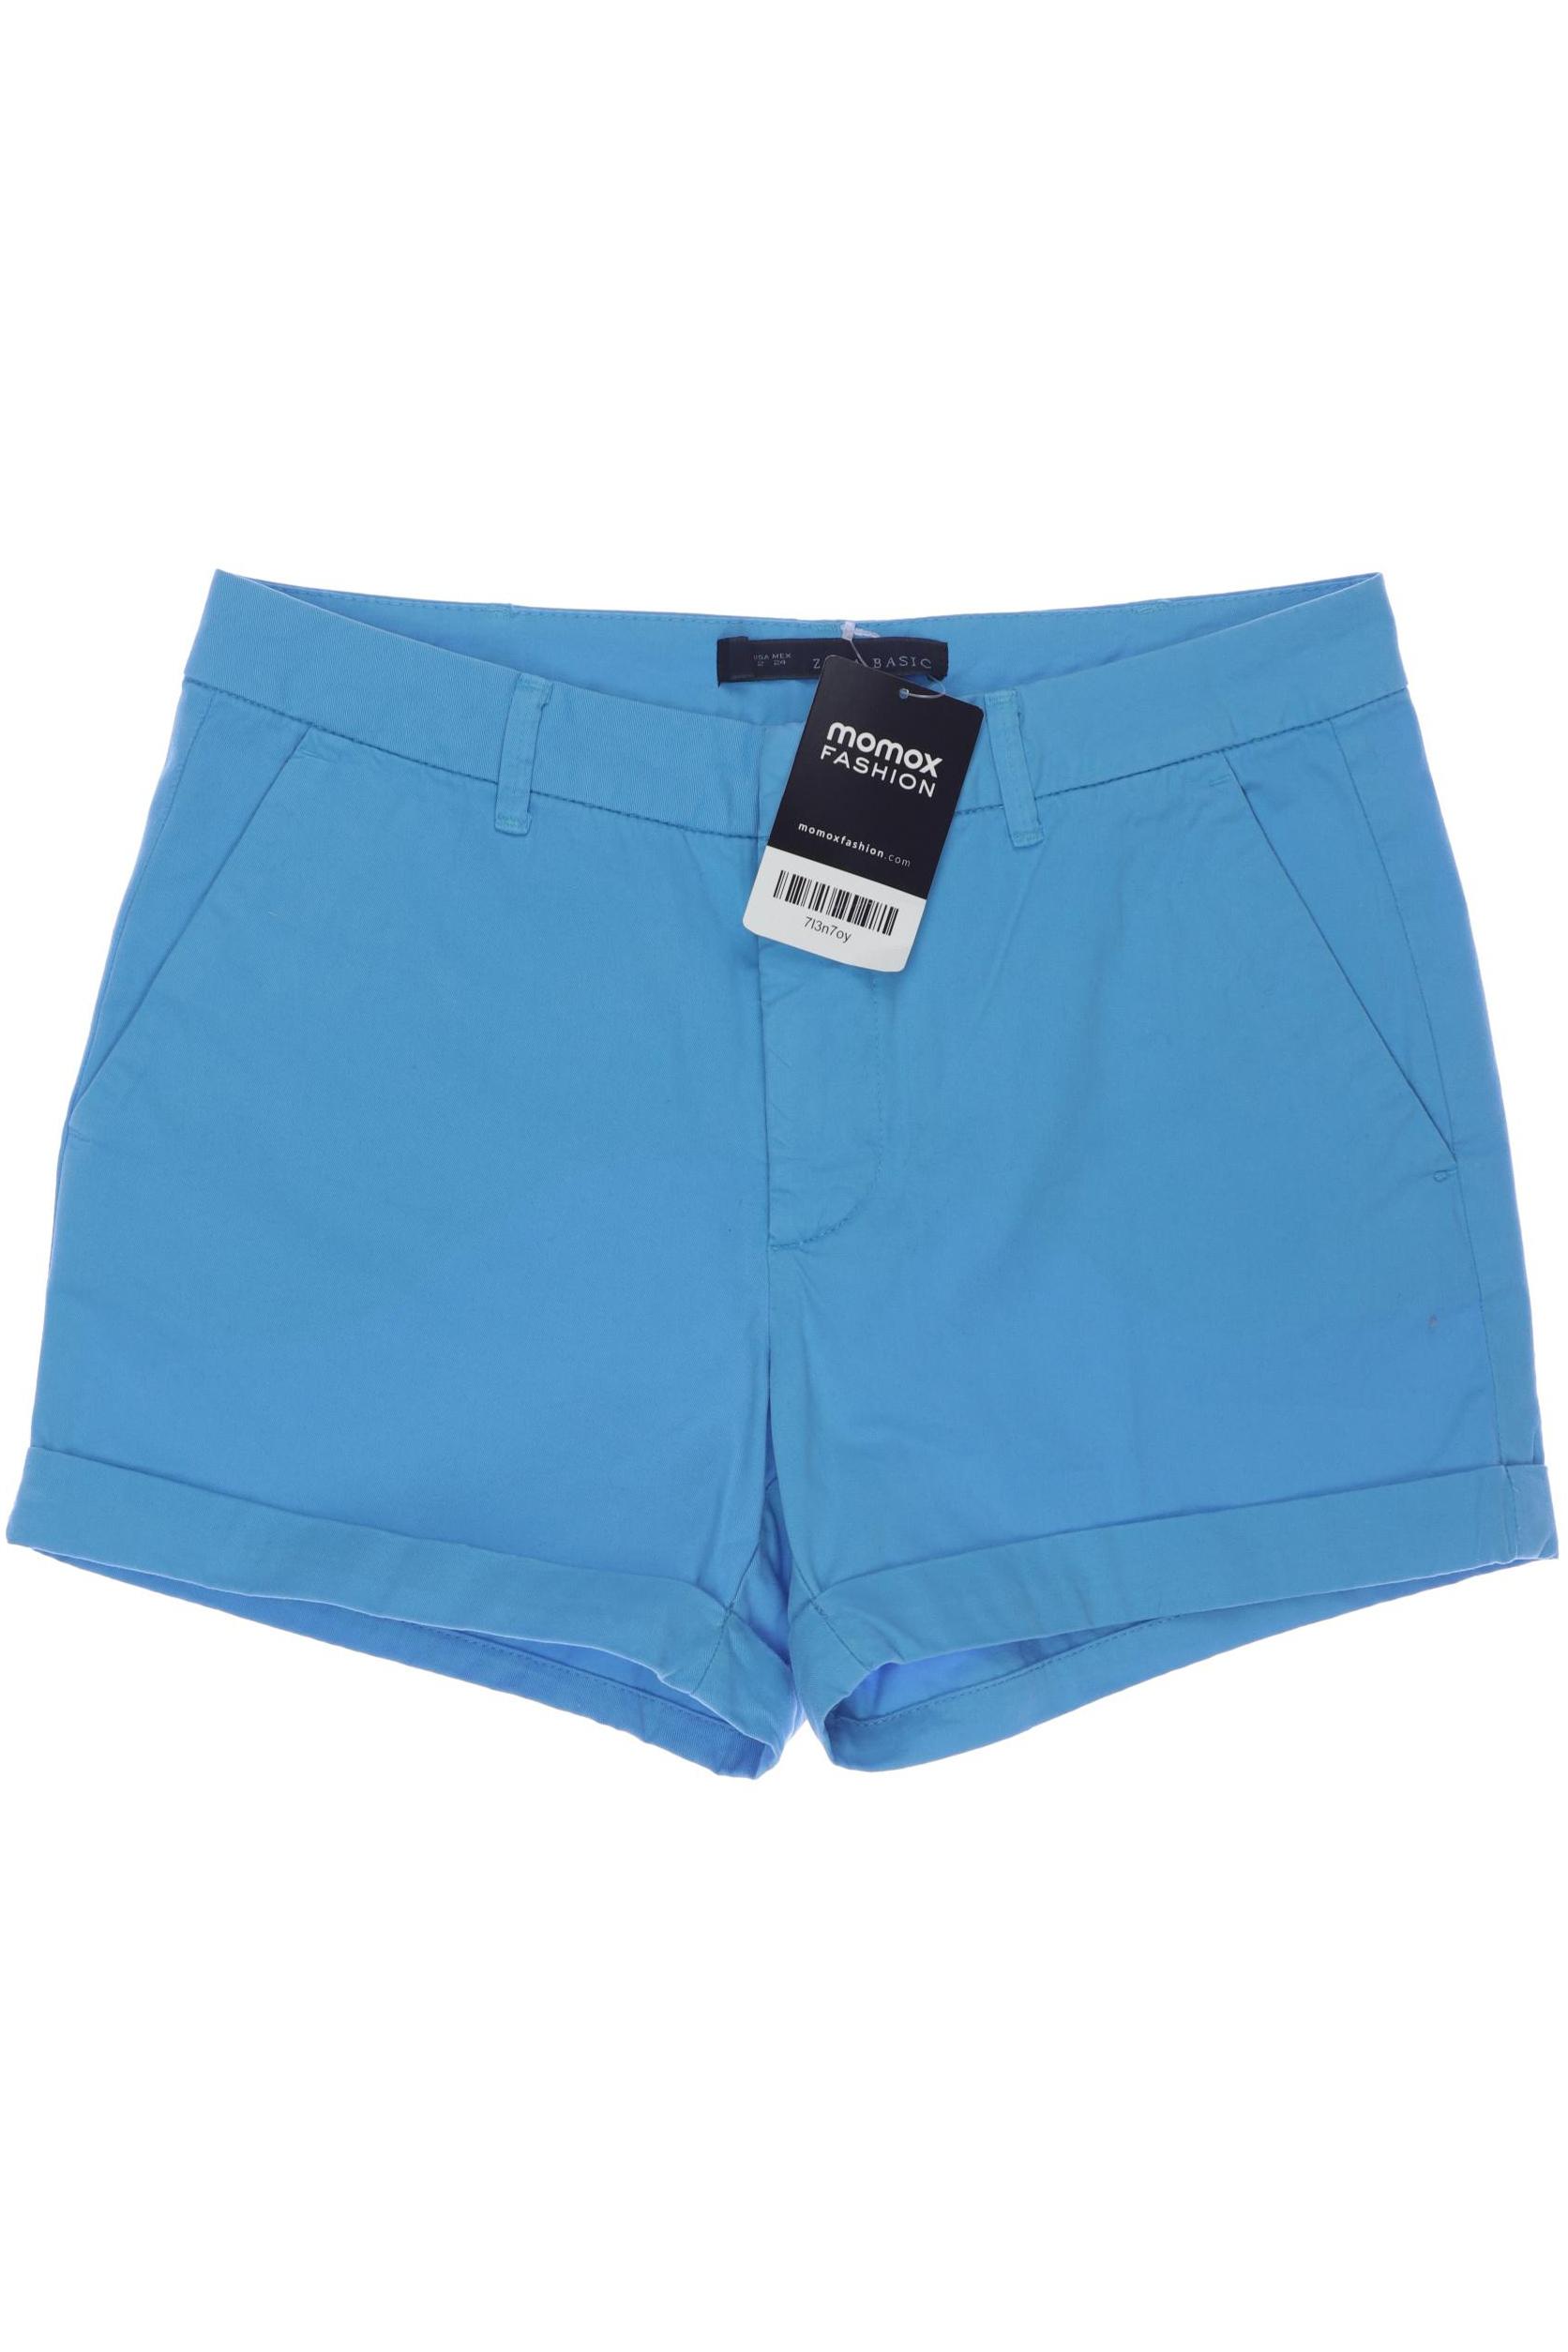 Zara Damen Shorts, blau, Gr. 34 von ZARA